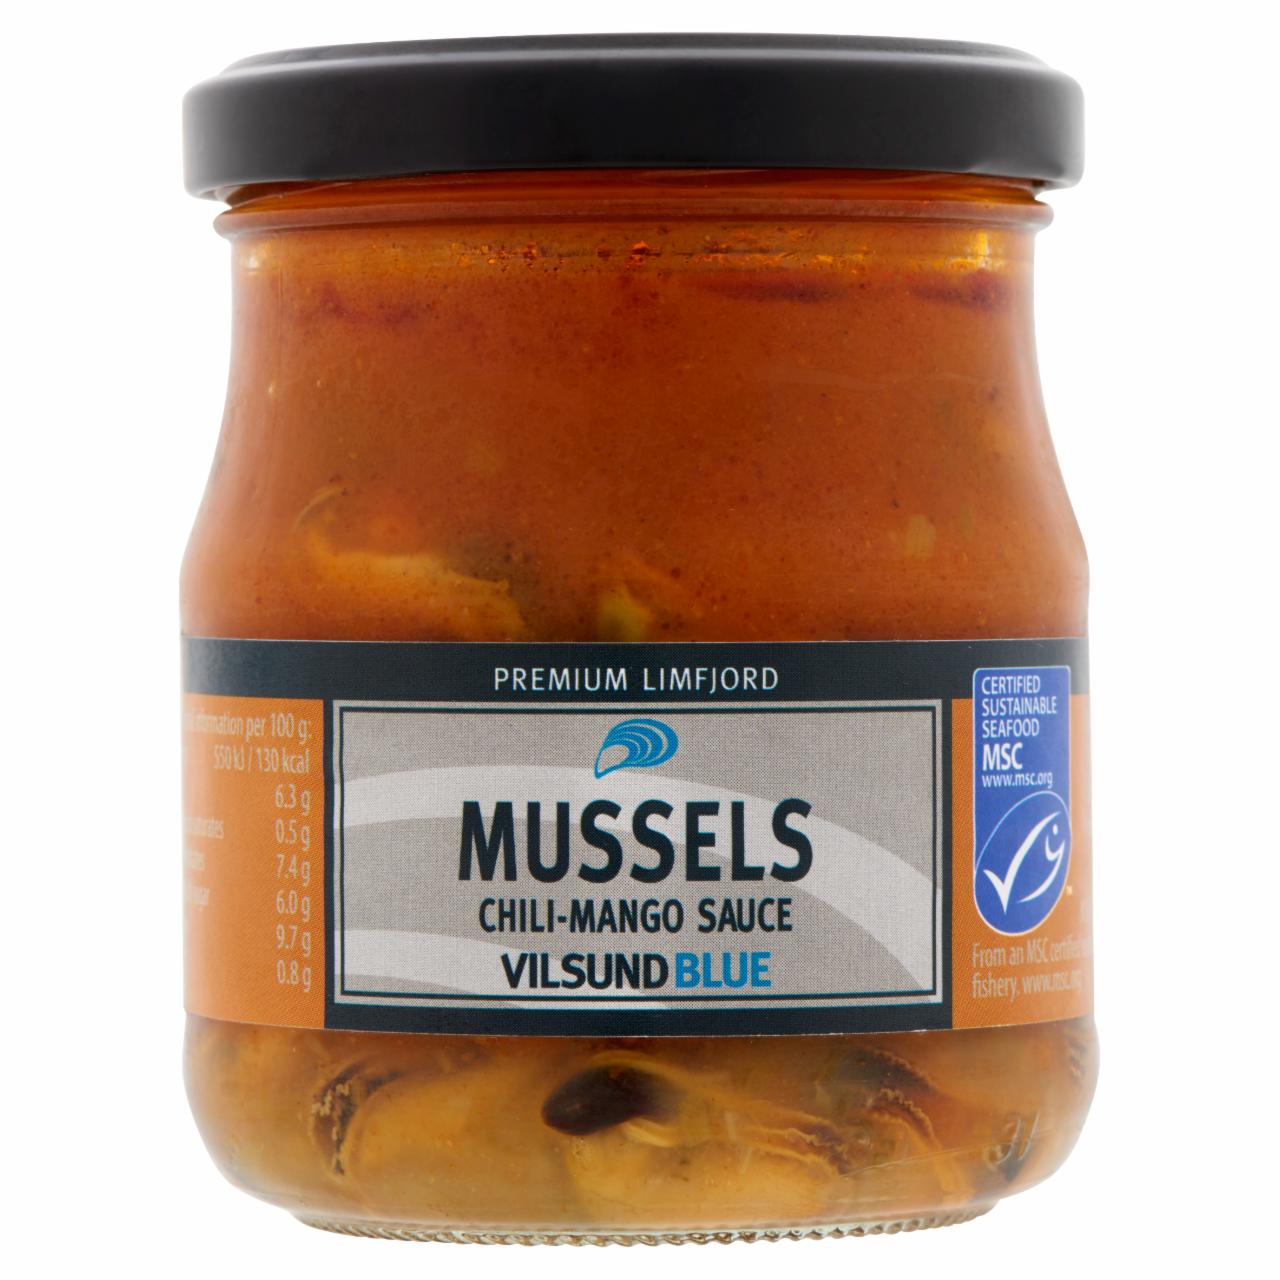 Képek - Vilsund Blue kagyló chili-mangó szószban 200 g